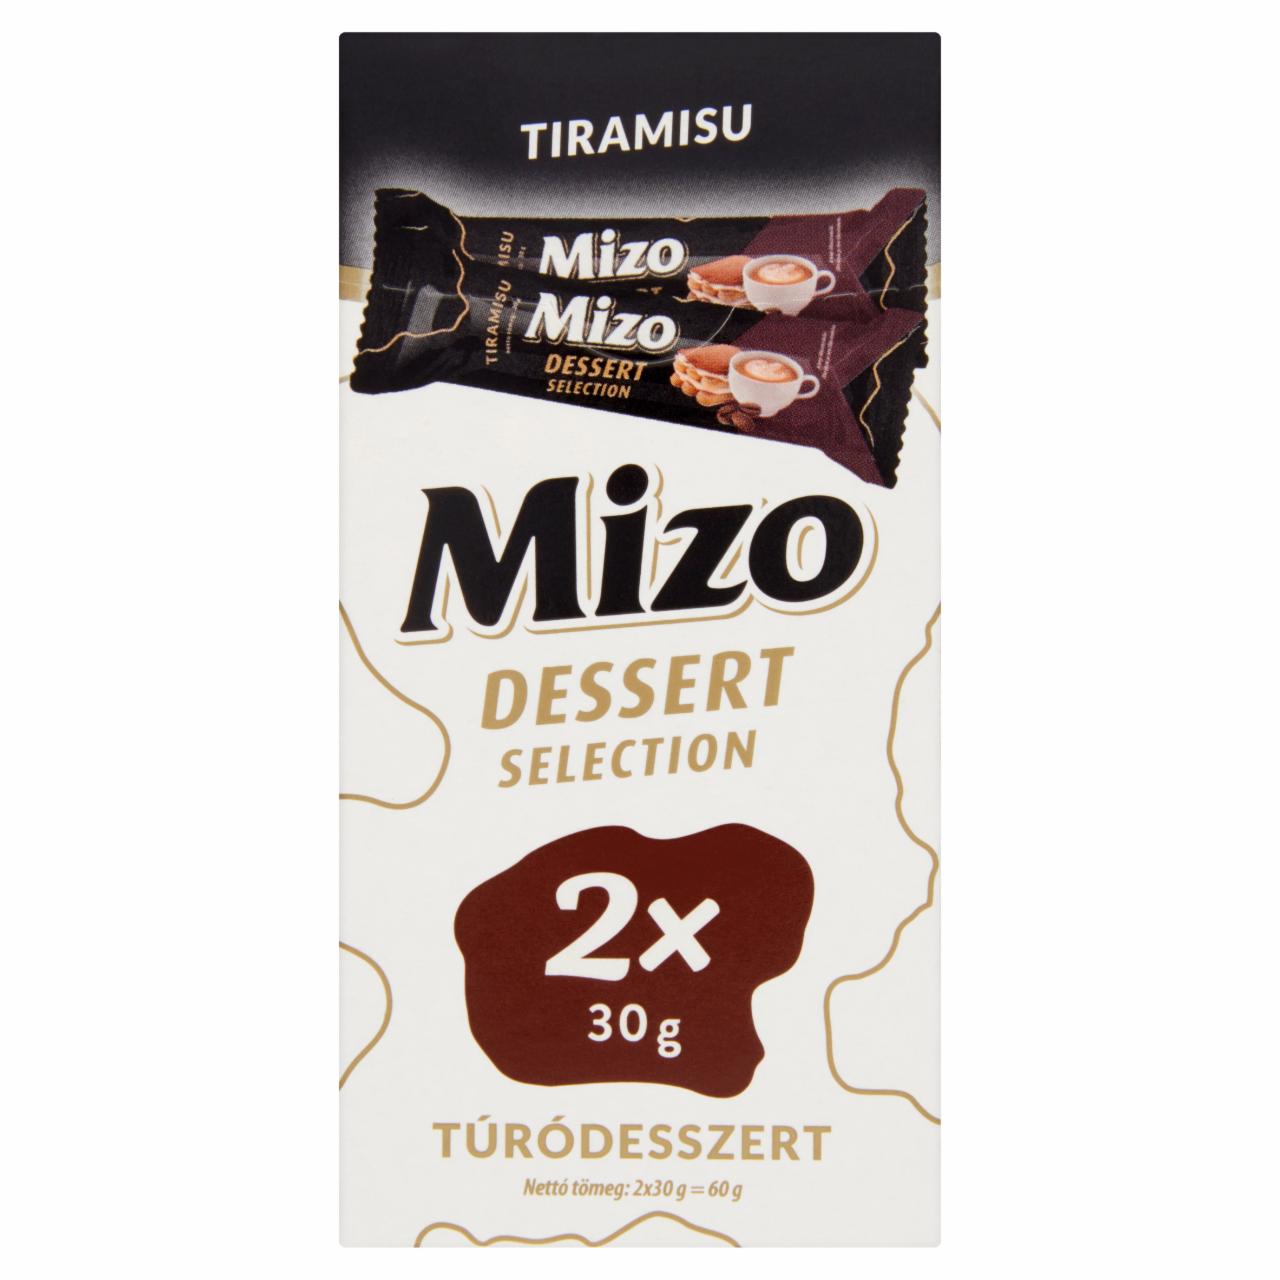 Képek - Mizo Dessert Selection Tiramisu túródesszert 2 x 30 g